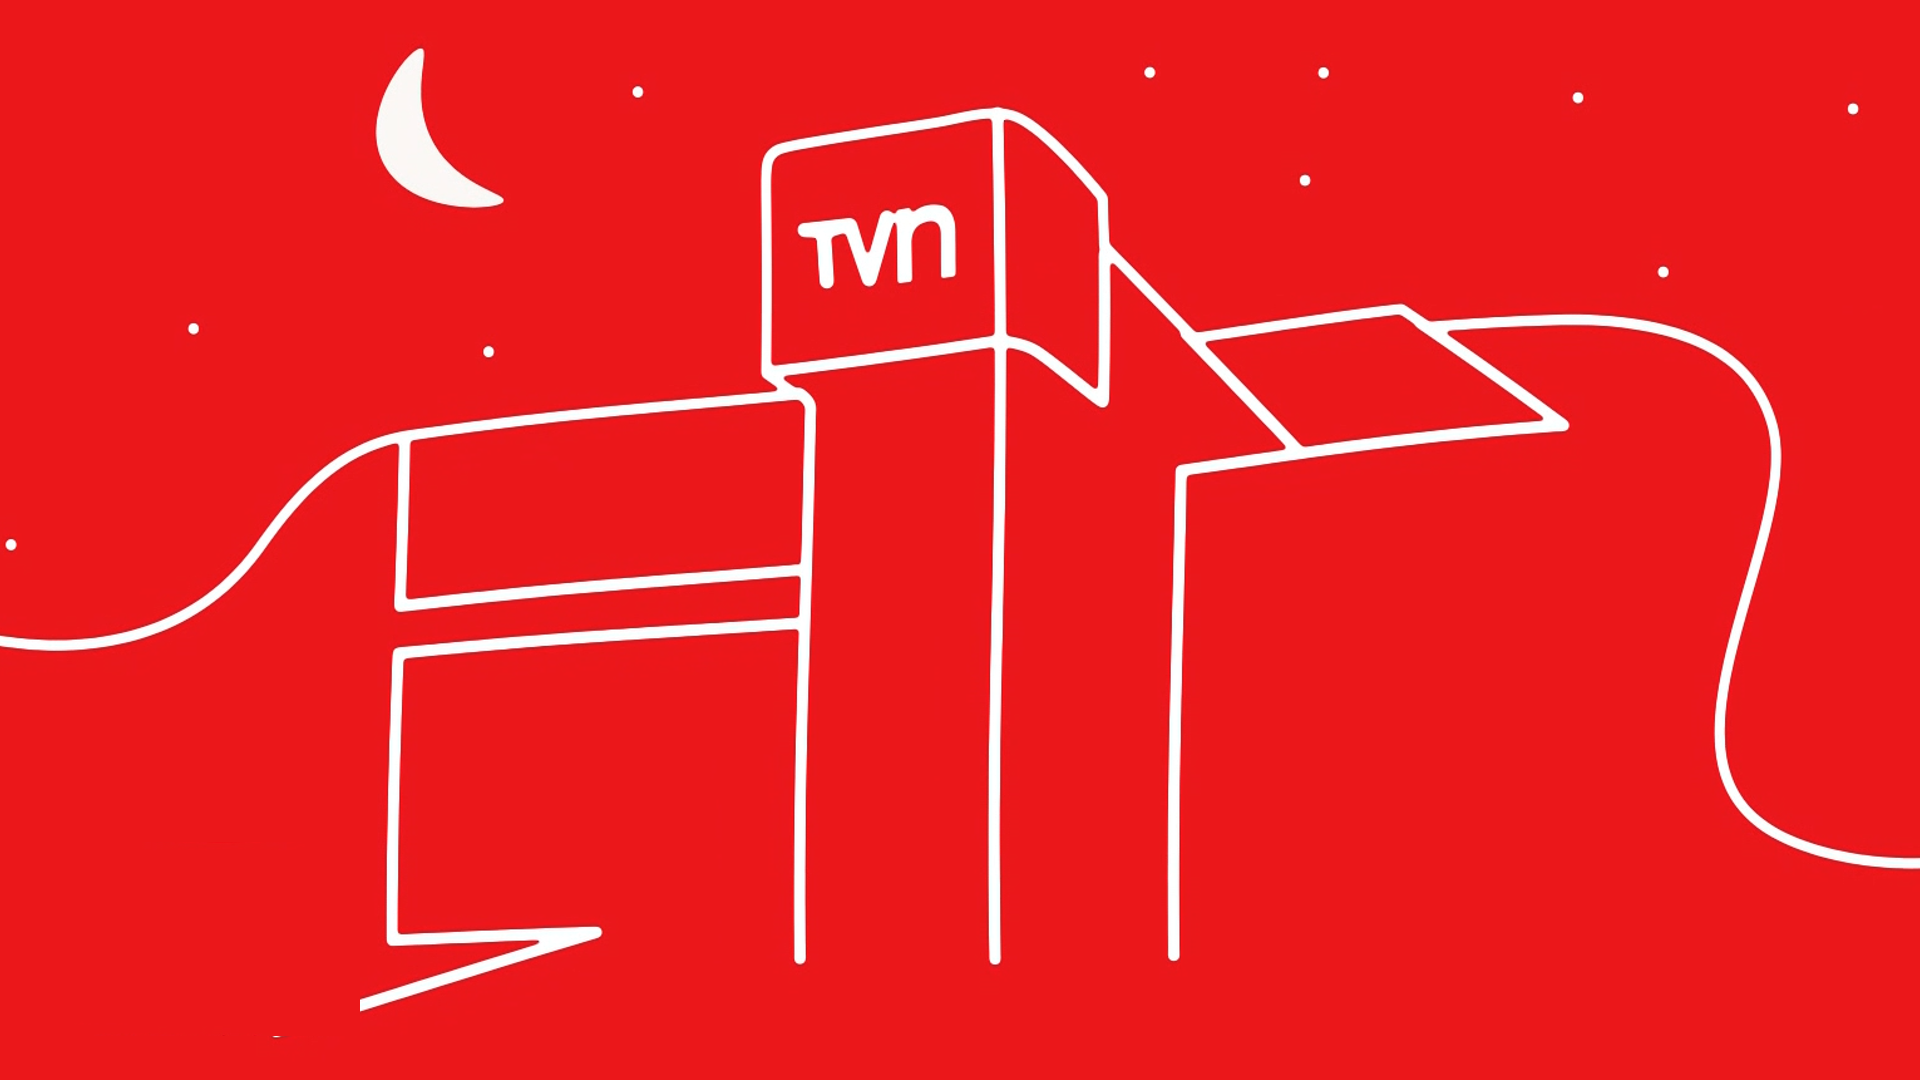 TVN Televisión Nacional